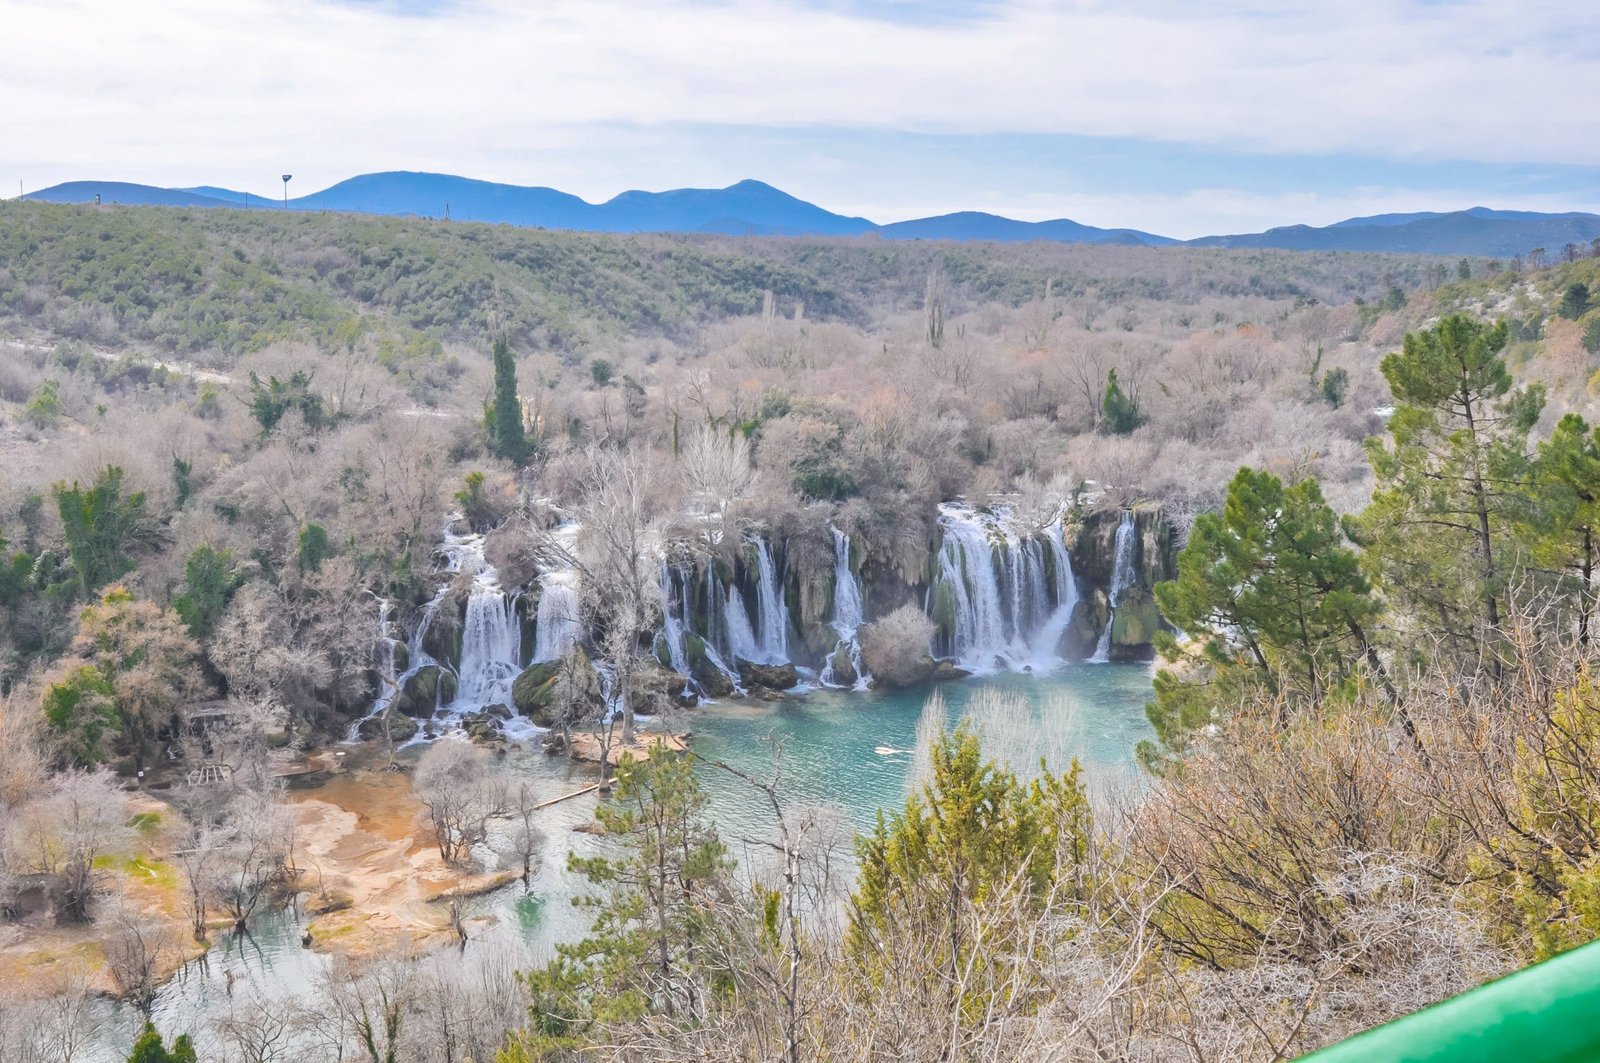 Mostar tour - Kravice waterfalls